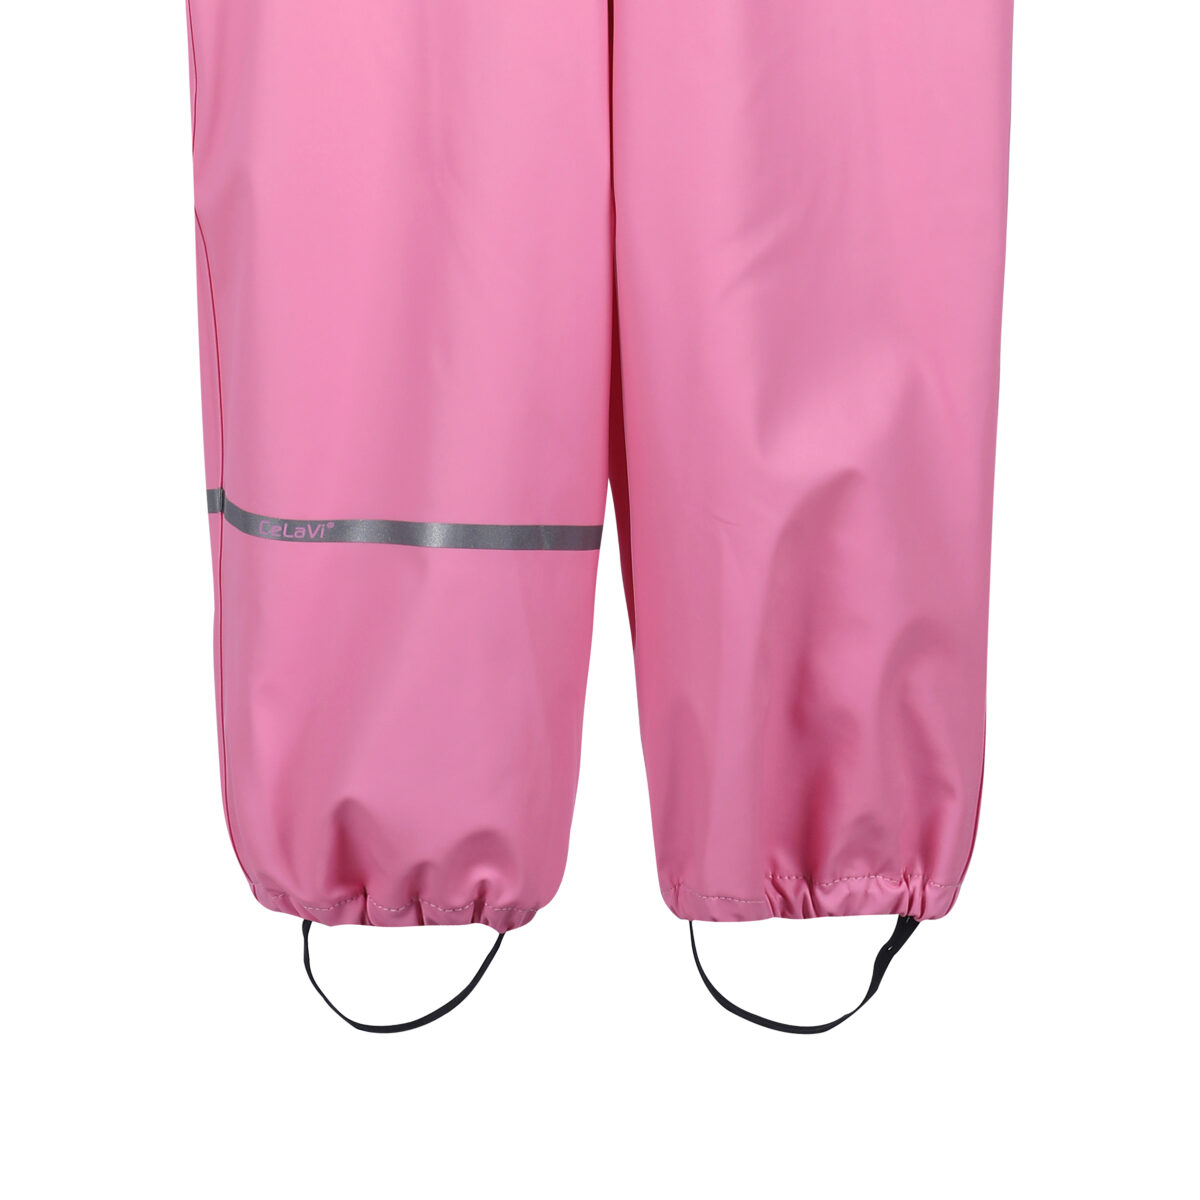 Celavi vihmapüksid, Cashmere Rose Lasteriided - HellyK - Kvaliteetsed lasteriided, villariided, barefoot jalatsid